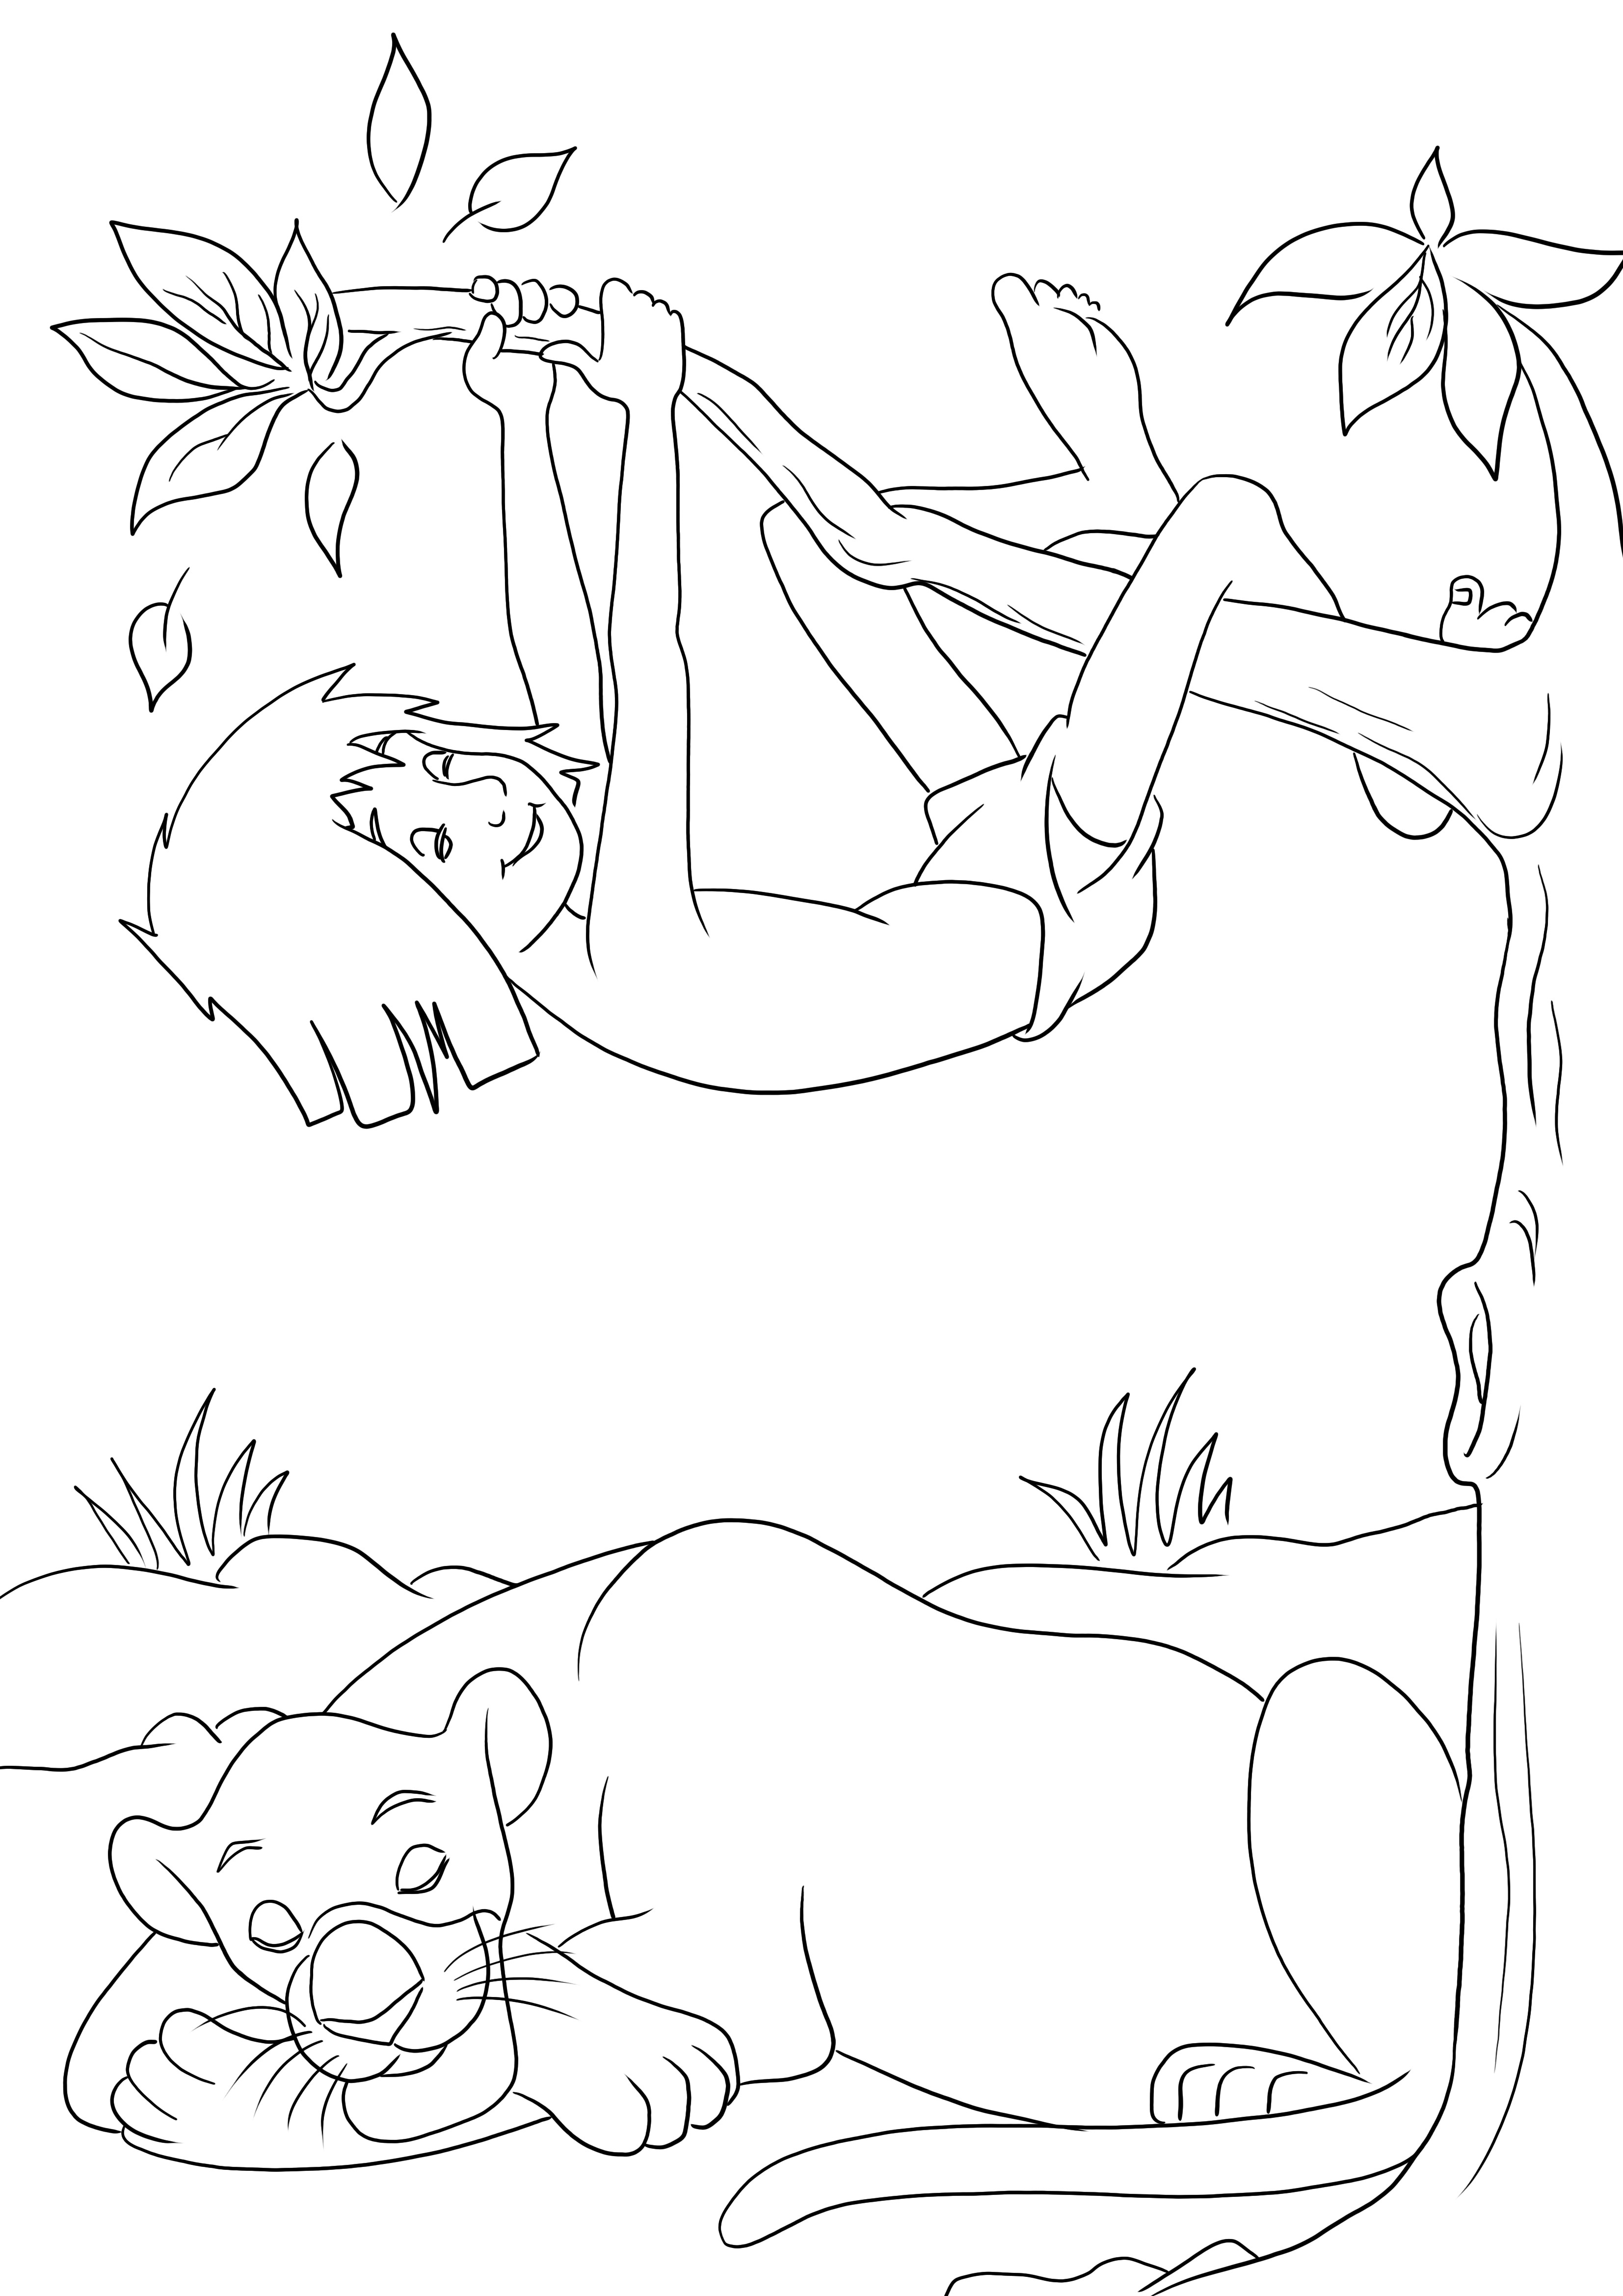 Mowgli y Bagheera durmiendo imprimible gratis para colorear fácil